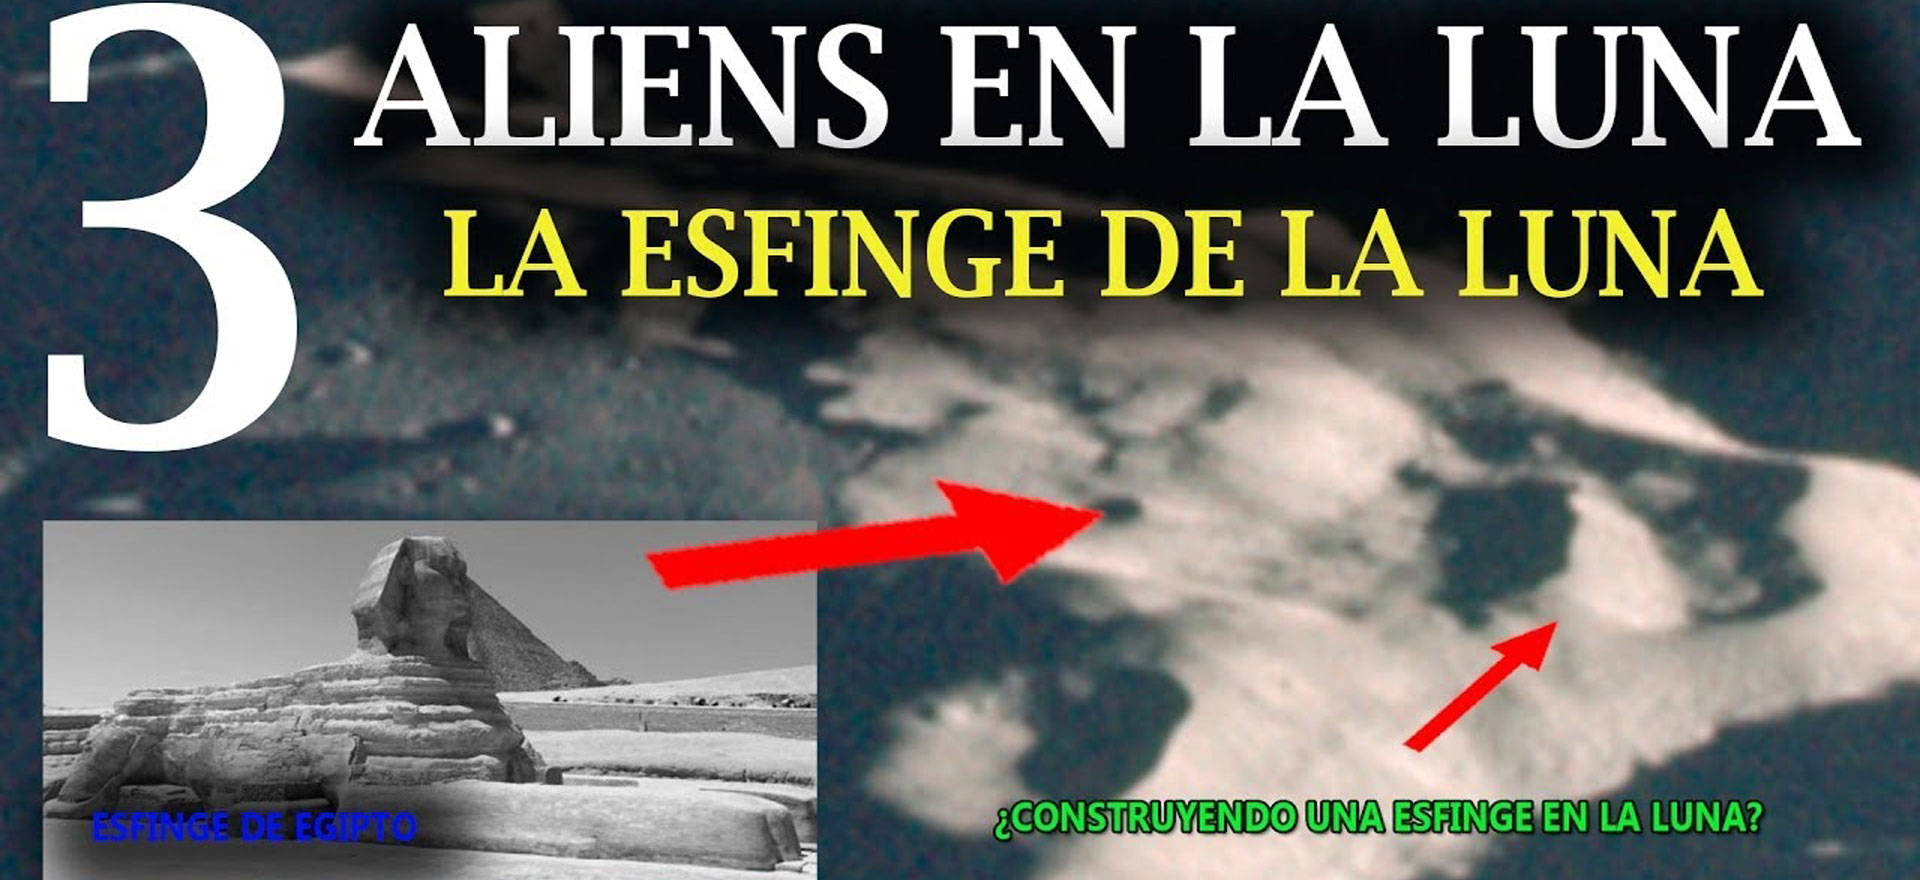 Aliens en la Luna 3 - La esfinge